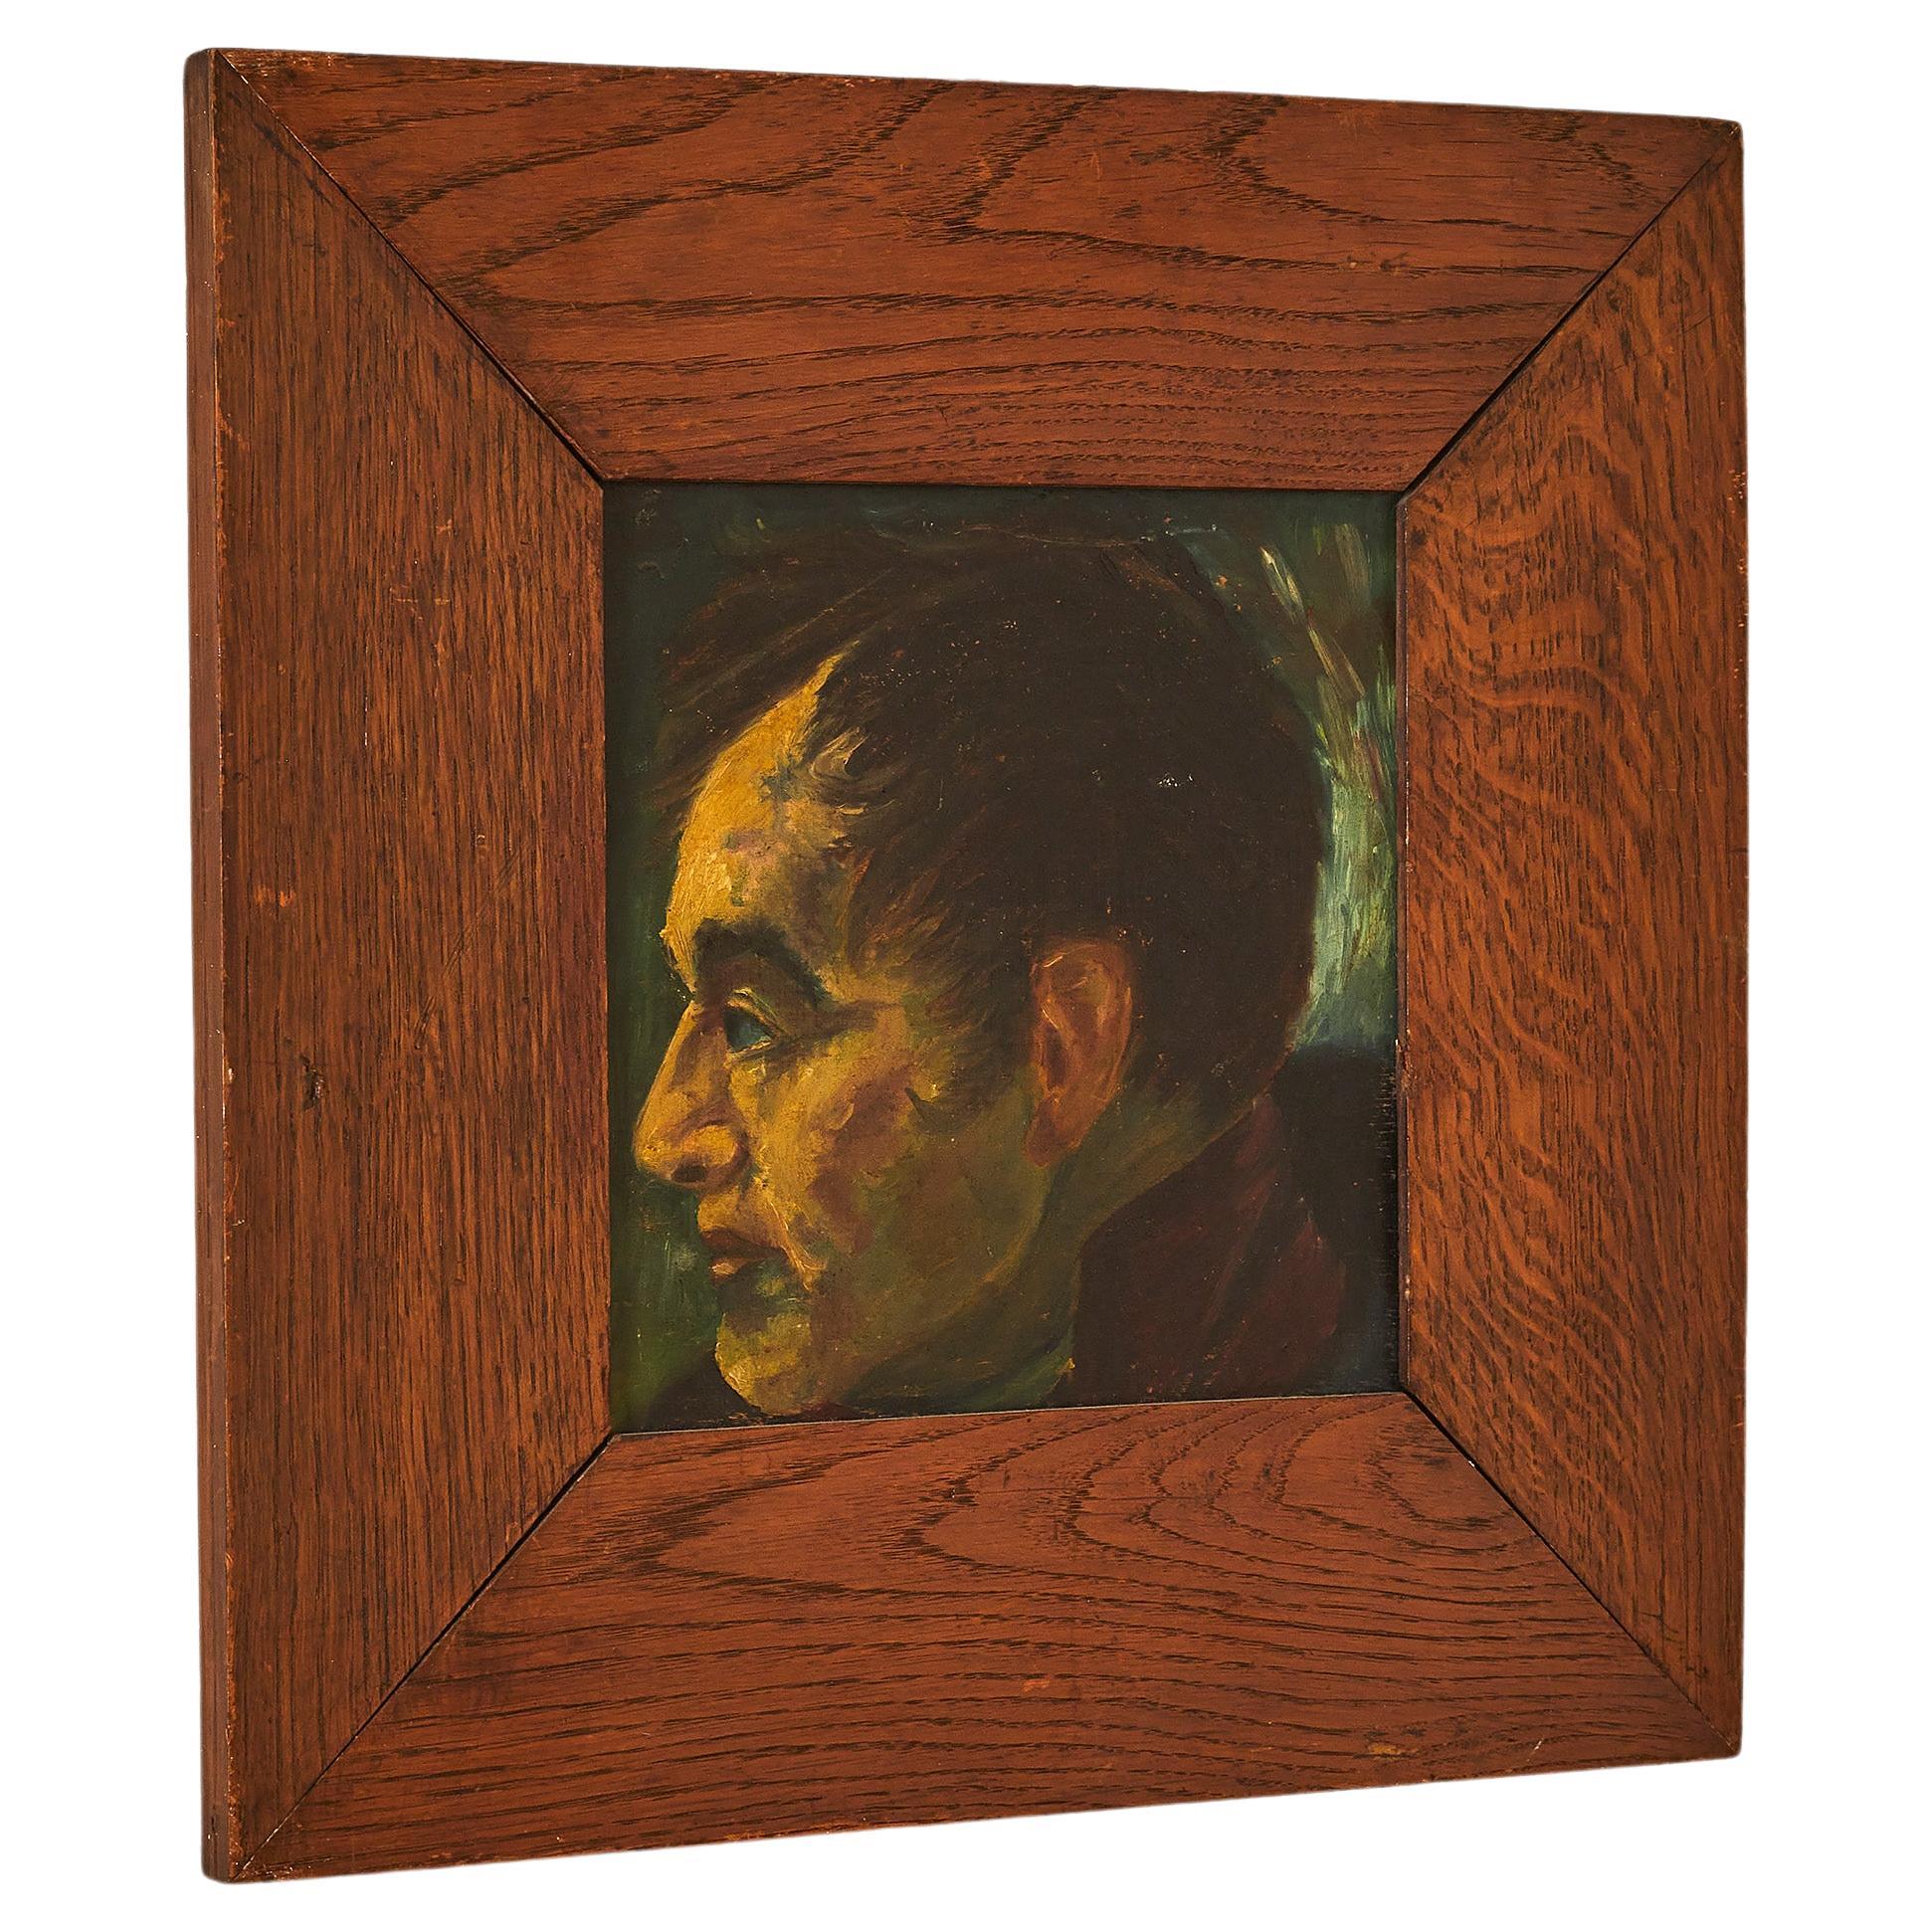 Italian Portrait in Wooden Frame